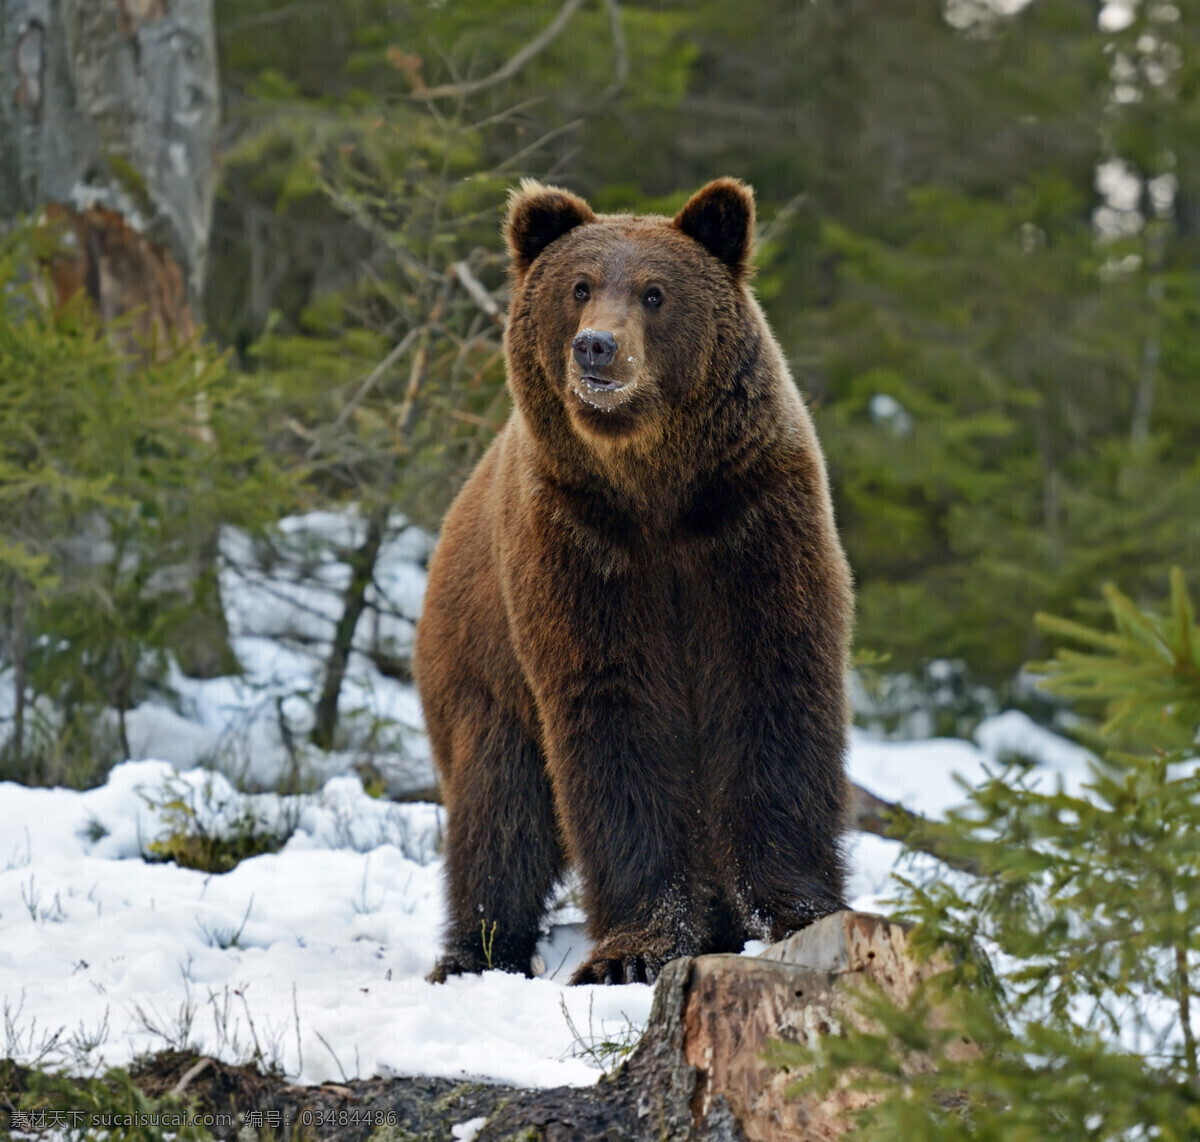 雪地 里 狗熊 熊 动物 陆地动物 野生动物 动物世界 动物摄影 生物世界